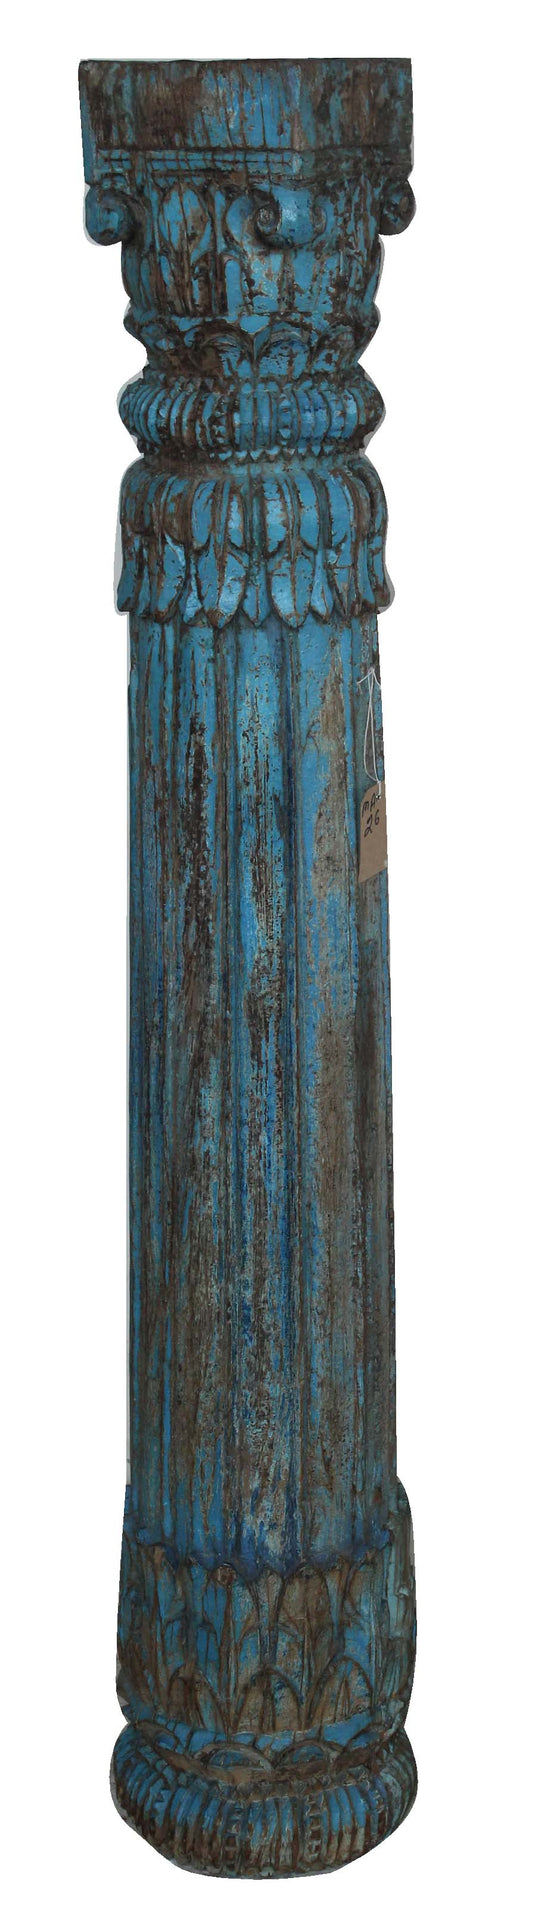 [[Jodhpur blue : Old pillar candle stand///Jodhur blue : bougeoir avec ancien pilier]]